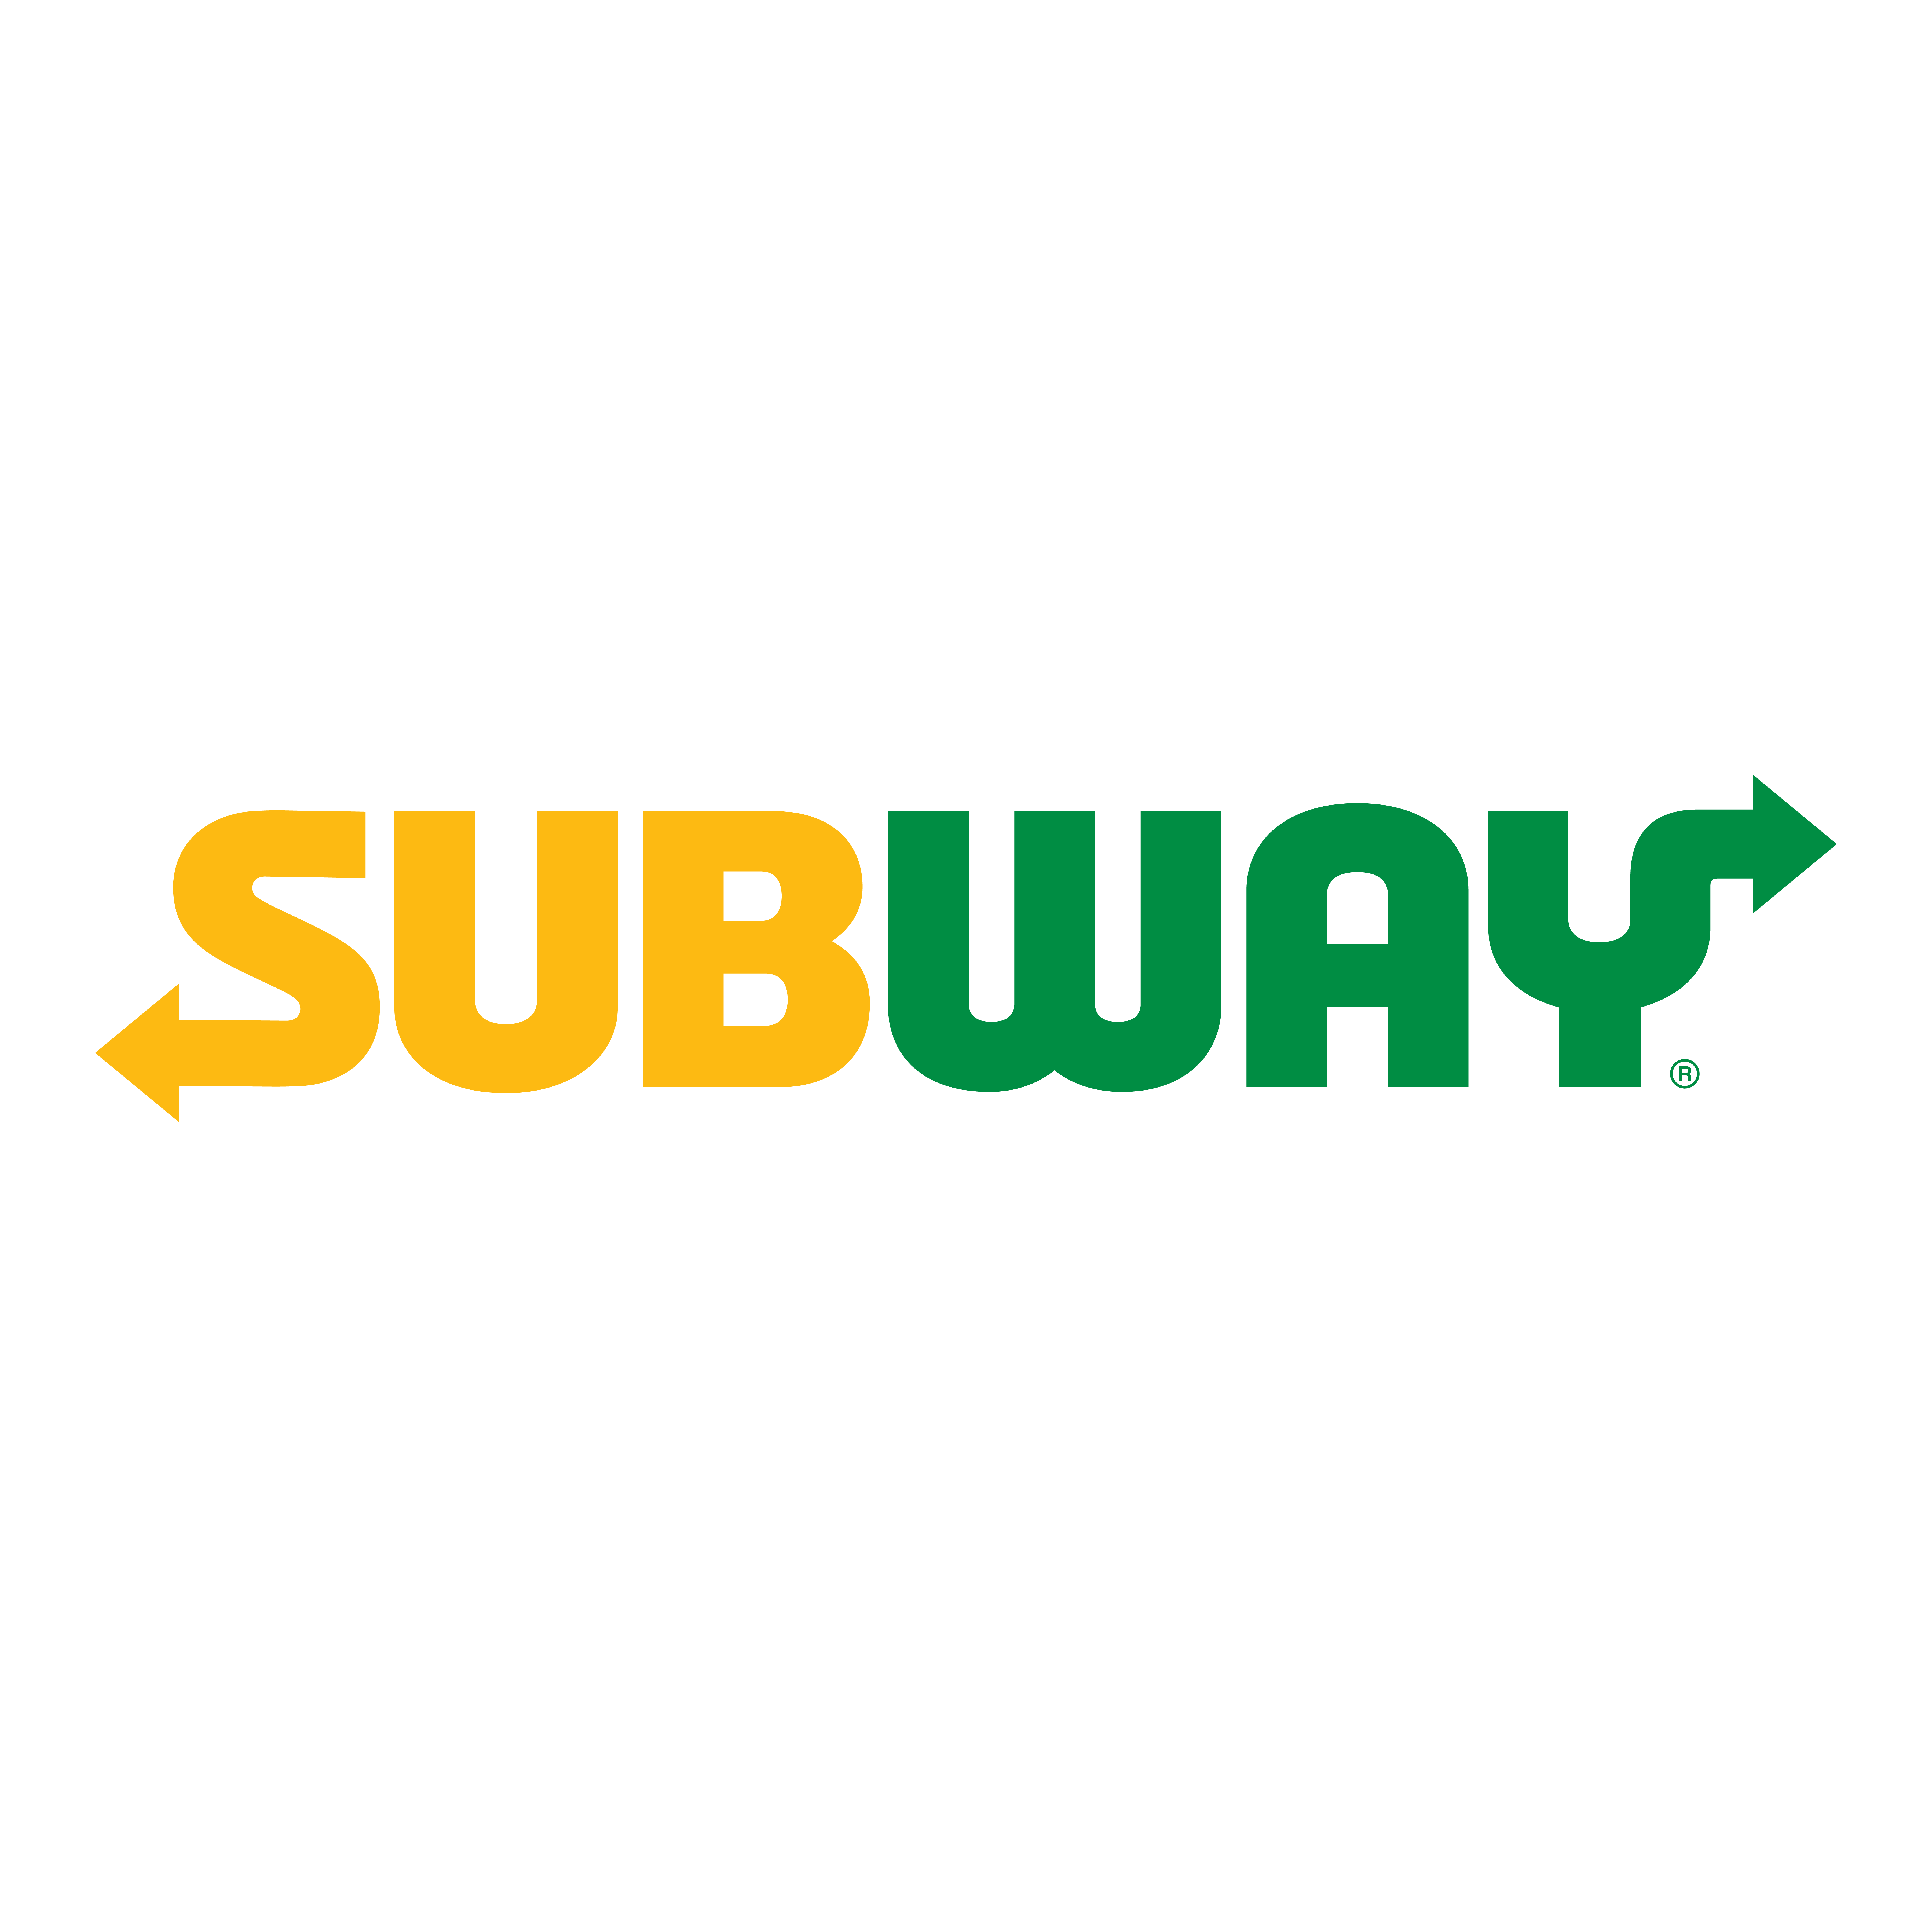 Subway Photo